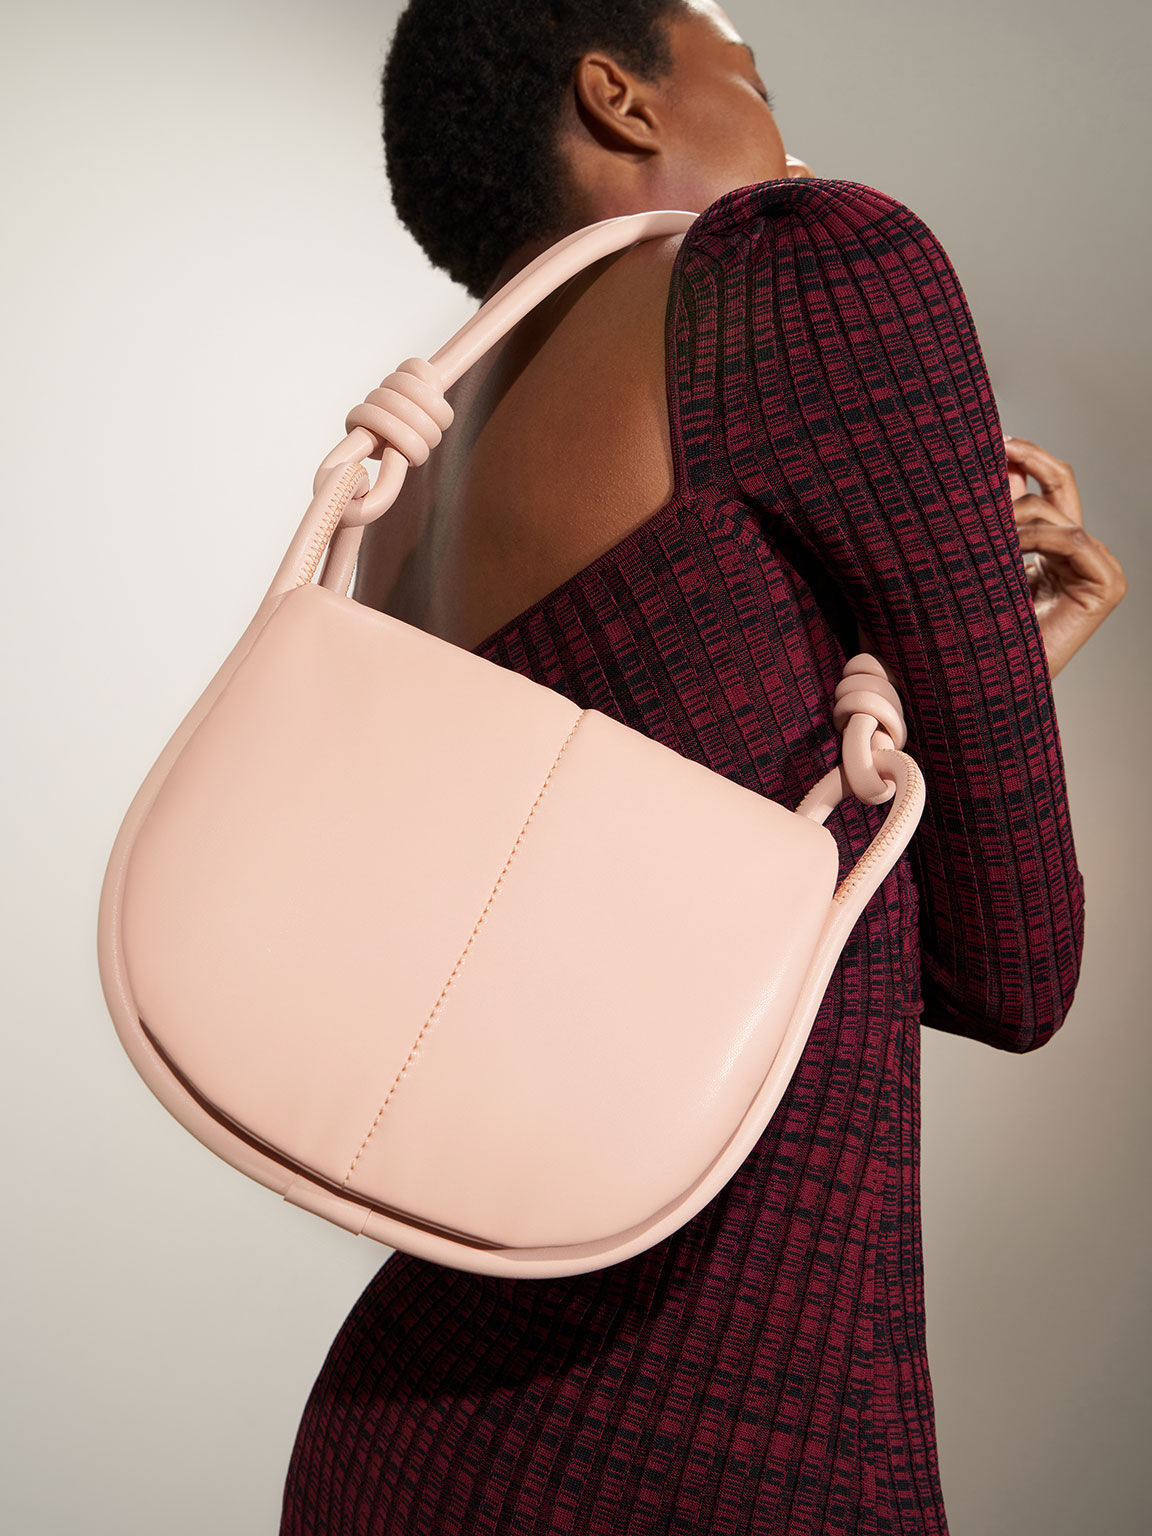 Luna Knotted Handle Shoulder Bag, Light Pink, hi-res